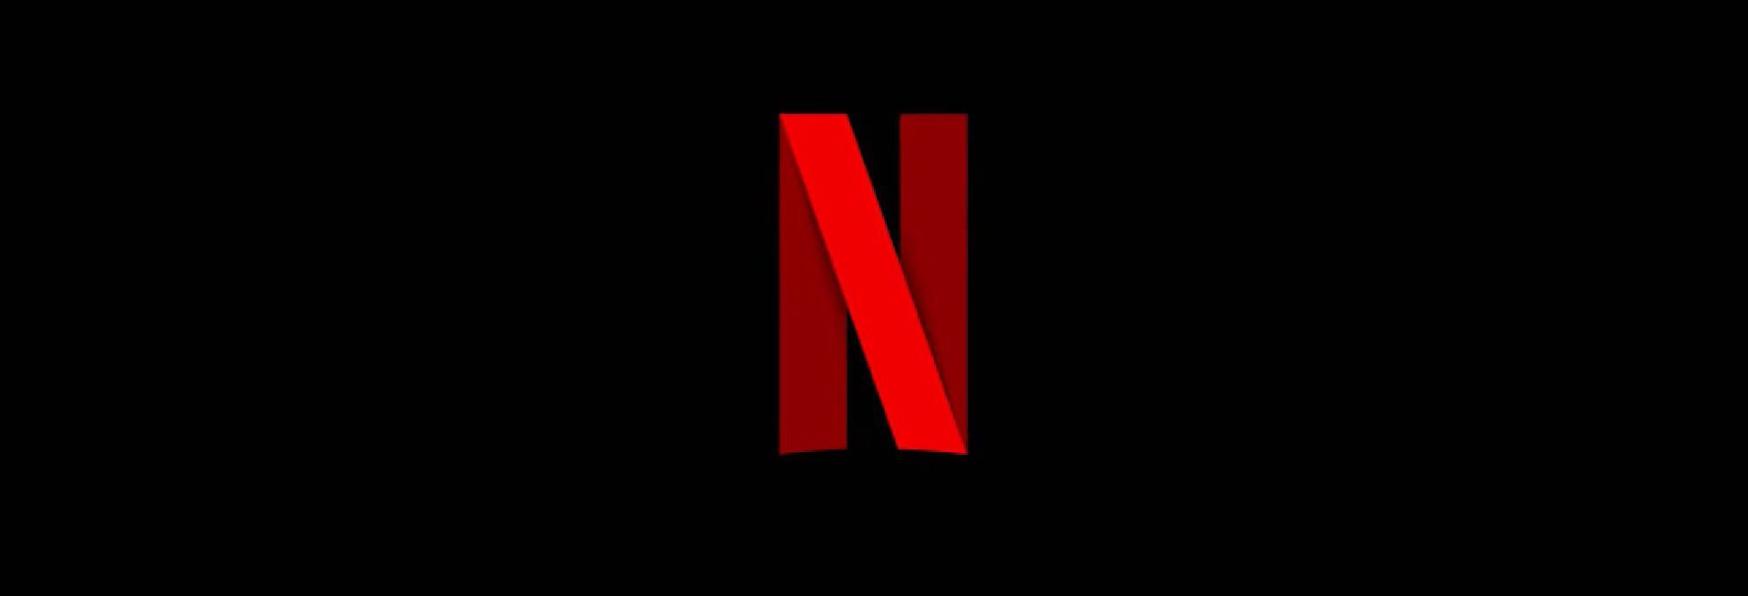 Netflix inizia la Stretta sull'Account Sharing: Condividere la Password avrà dei Costi